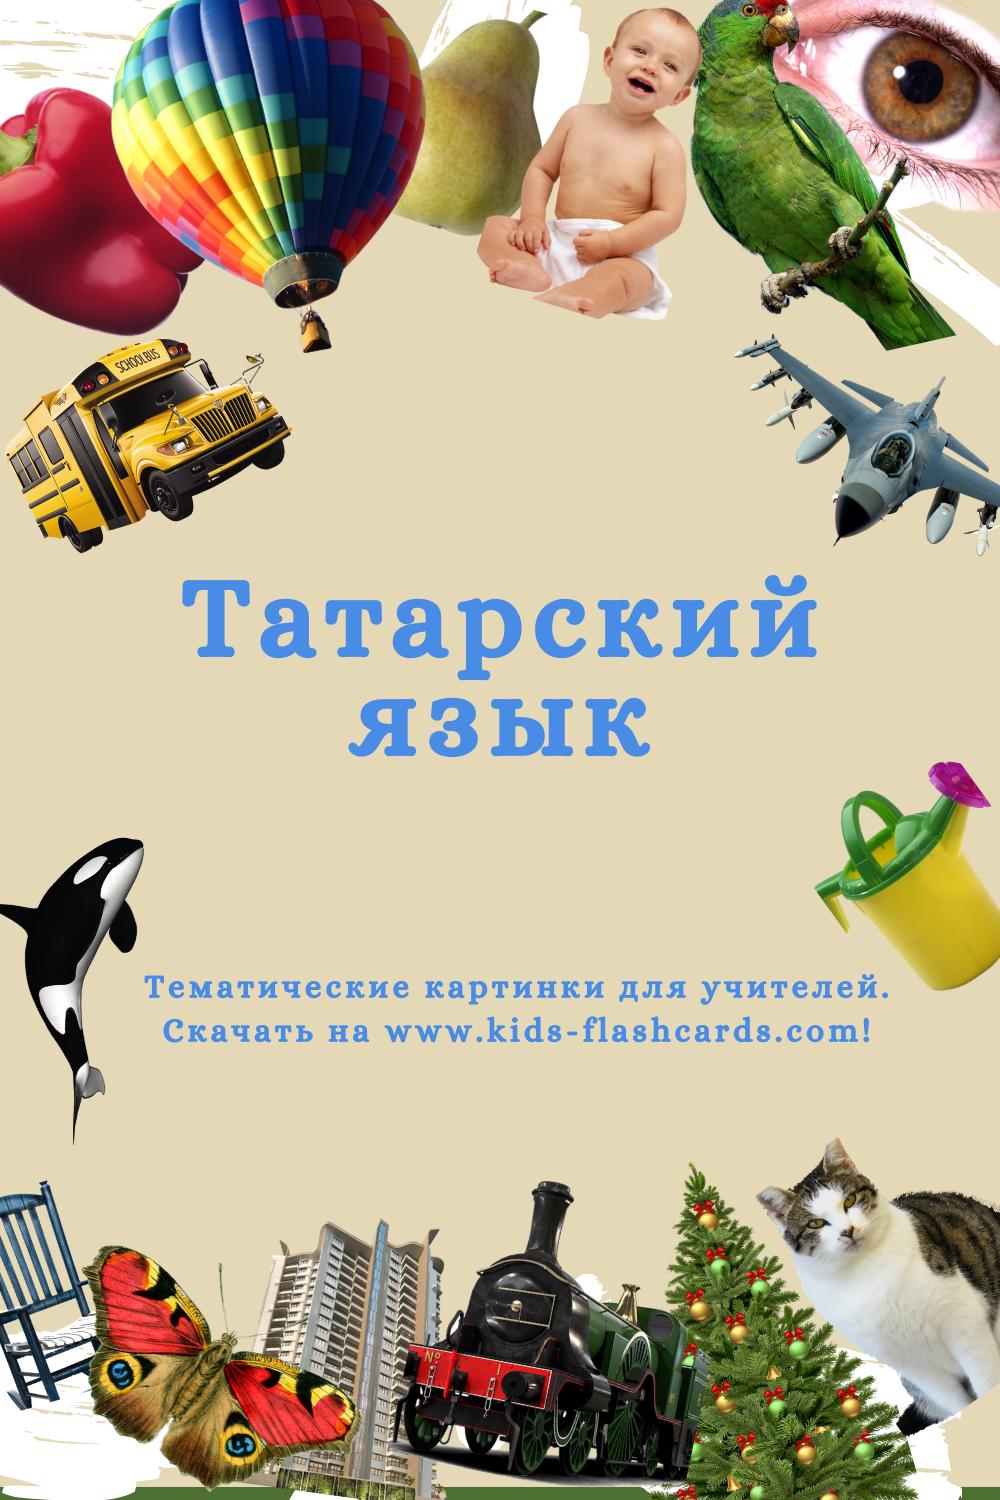 Татарский язык - распечатки для детей